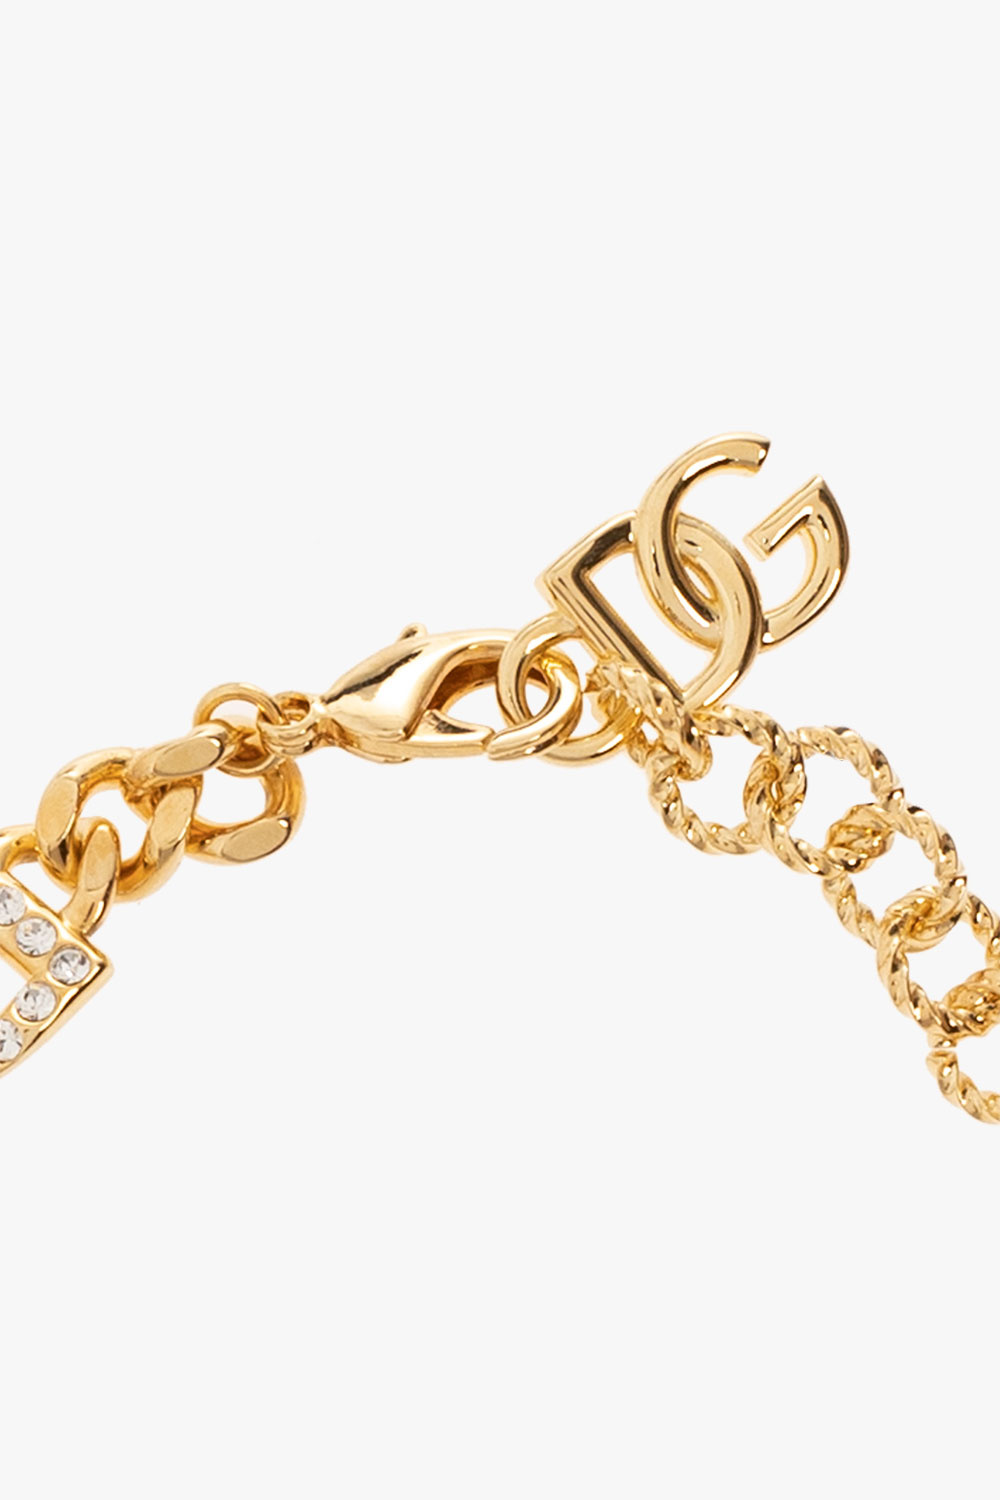 Louis Vuitton Roman Holidays Choker Necklace - Brass Choker